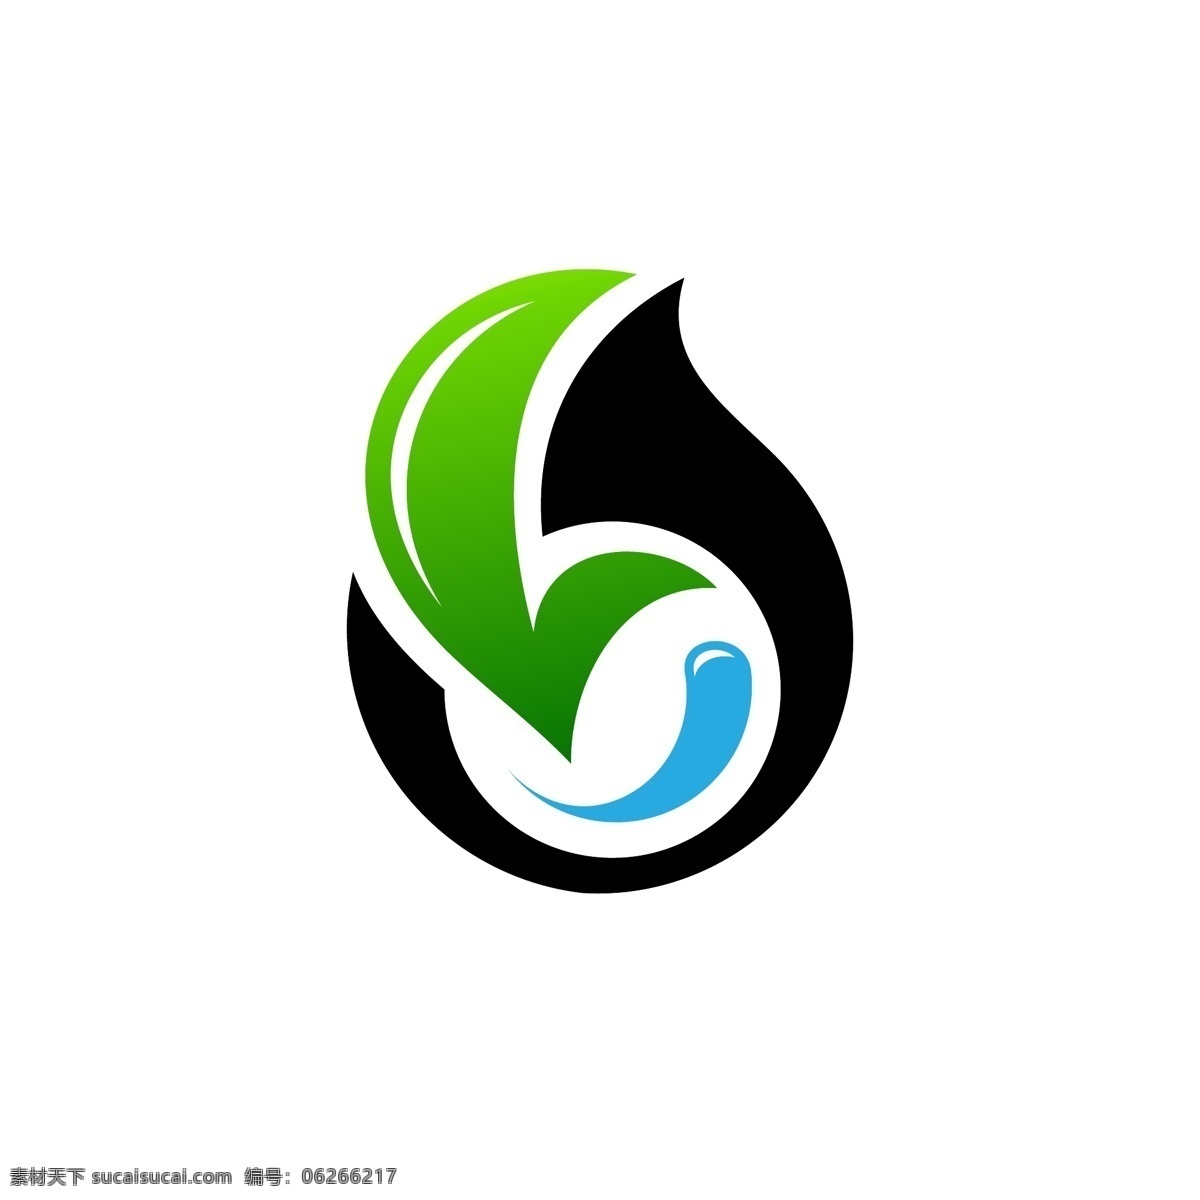 绿色 能源 类 标识 logo 科技logo 企业logo 互联网 工业 多用途 公司logo 企业标识